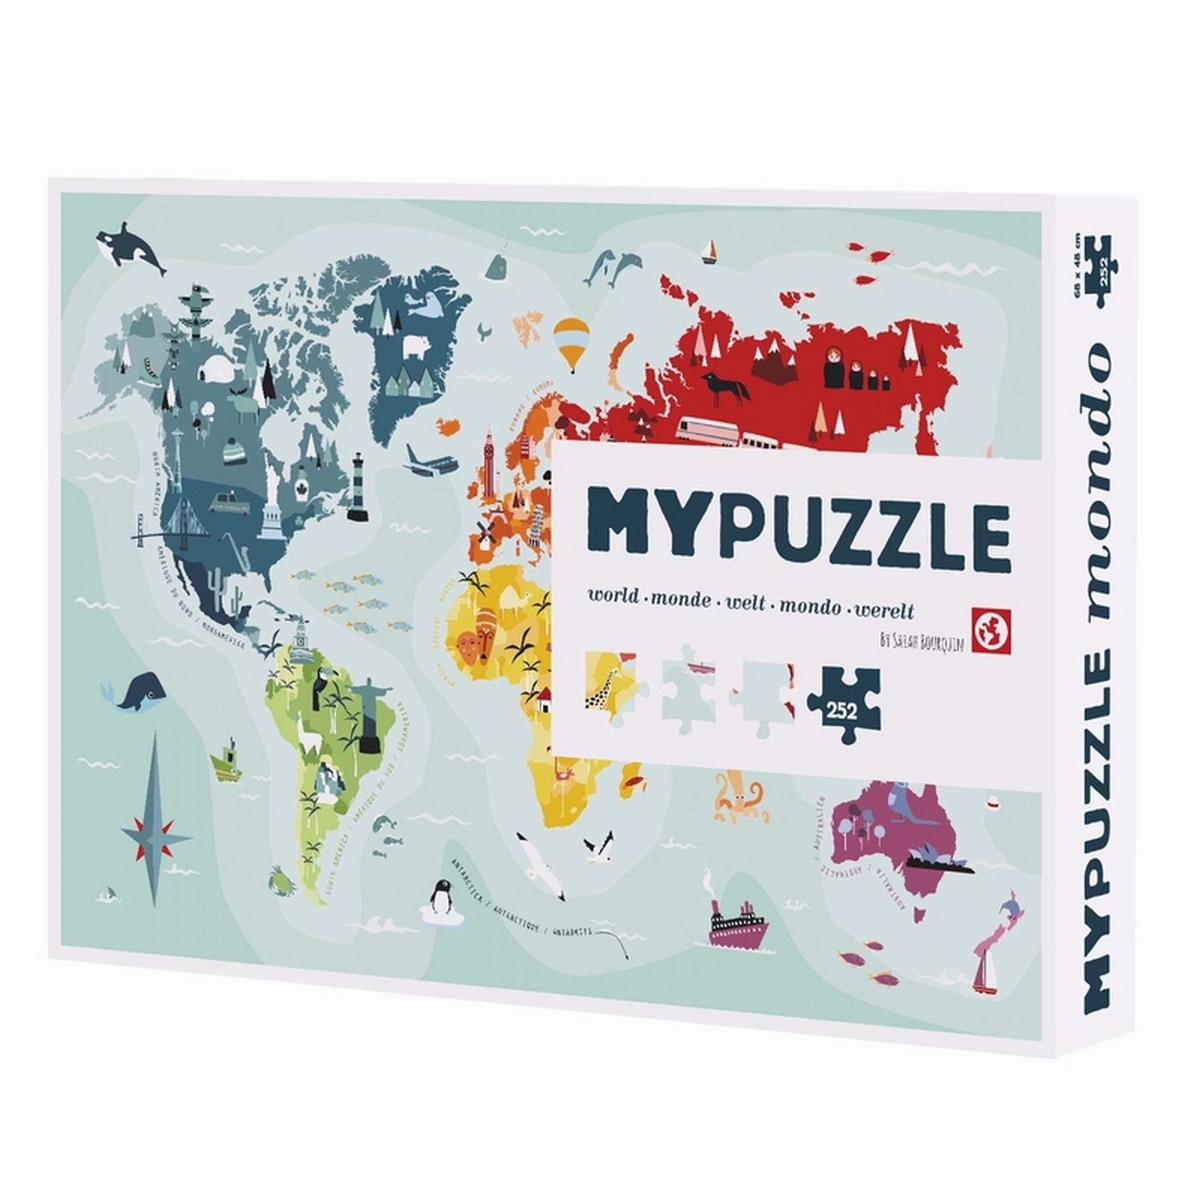 My Puzzle : vos puzzles personnalisés fabriqués en France